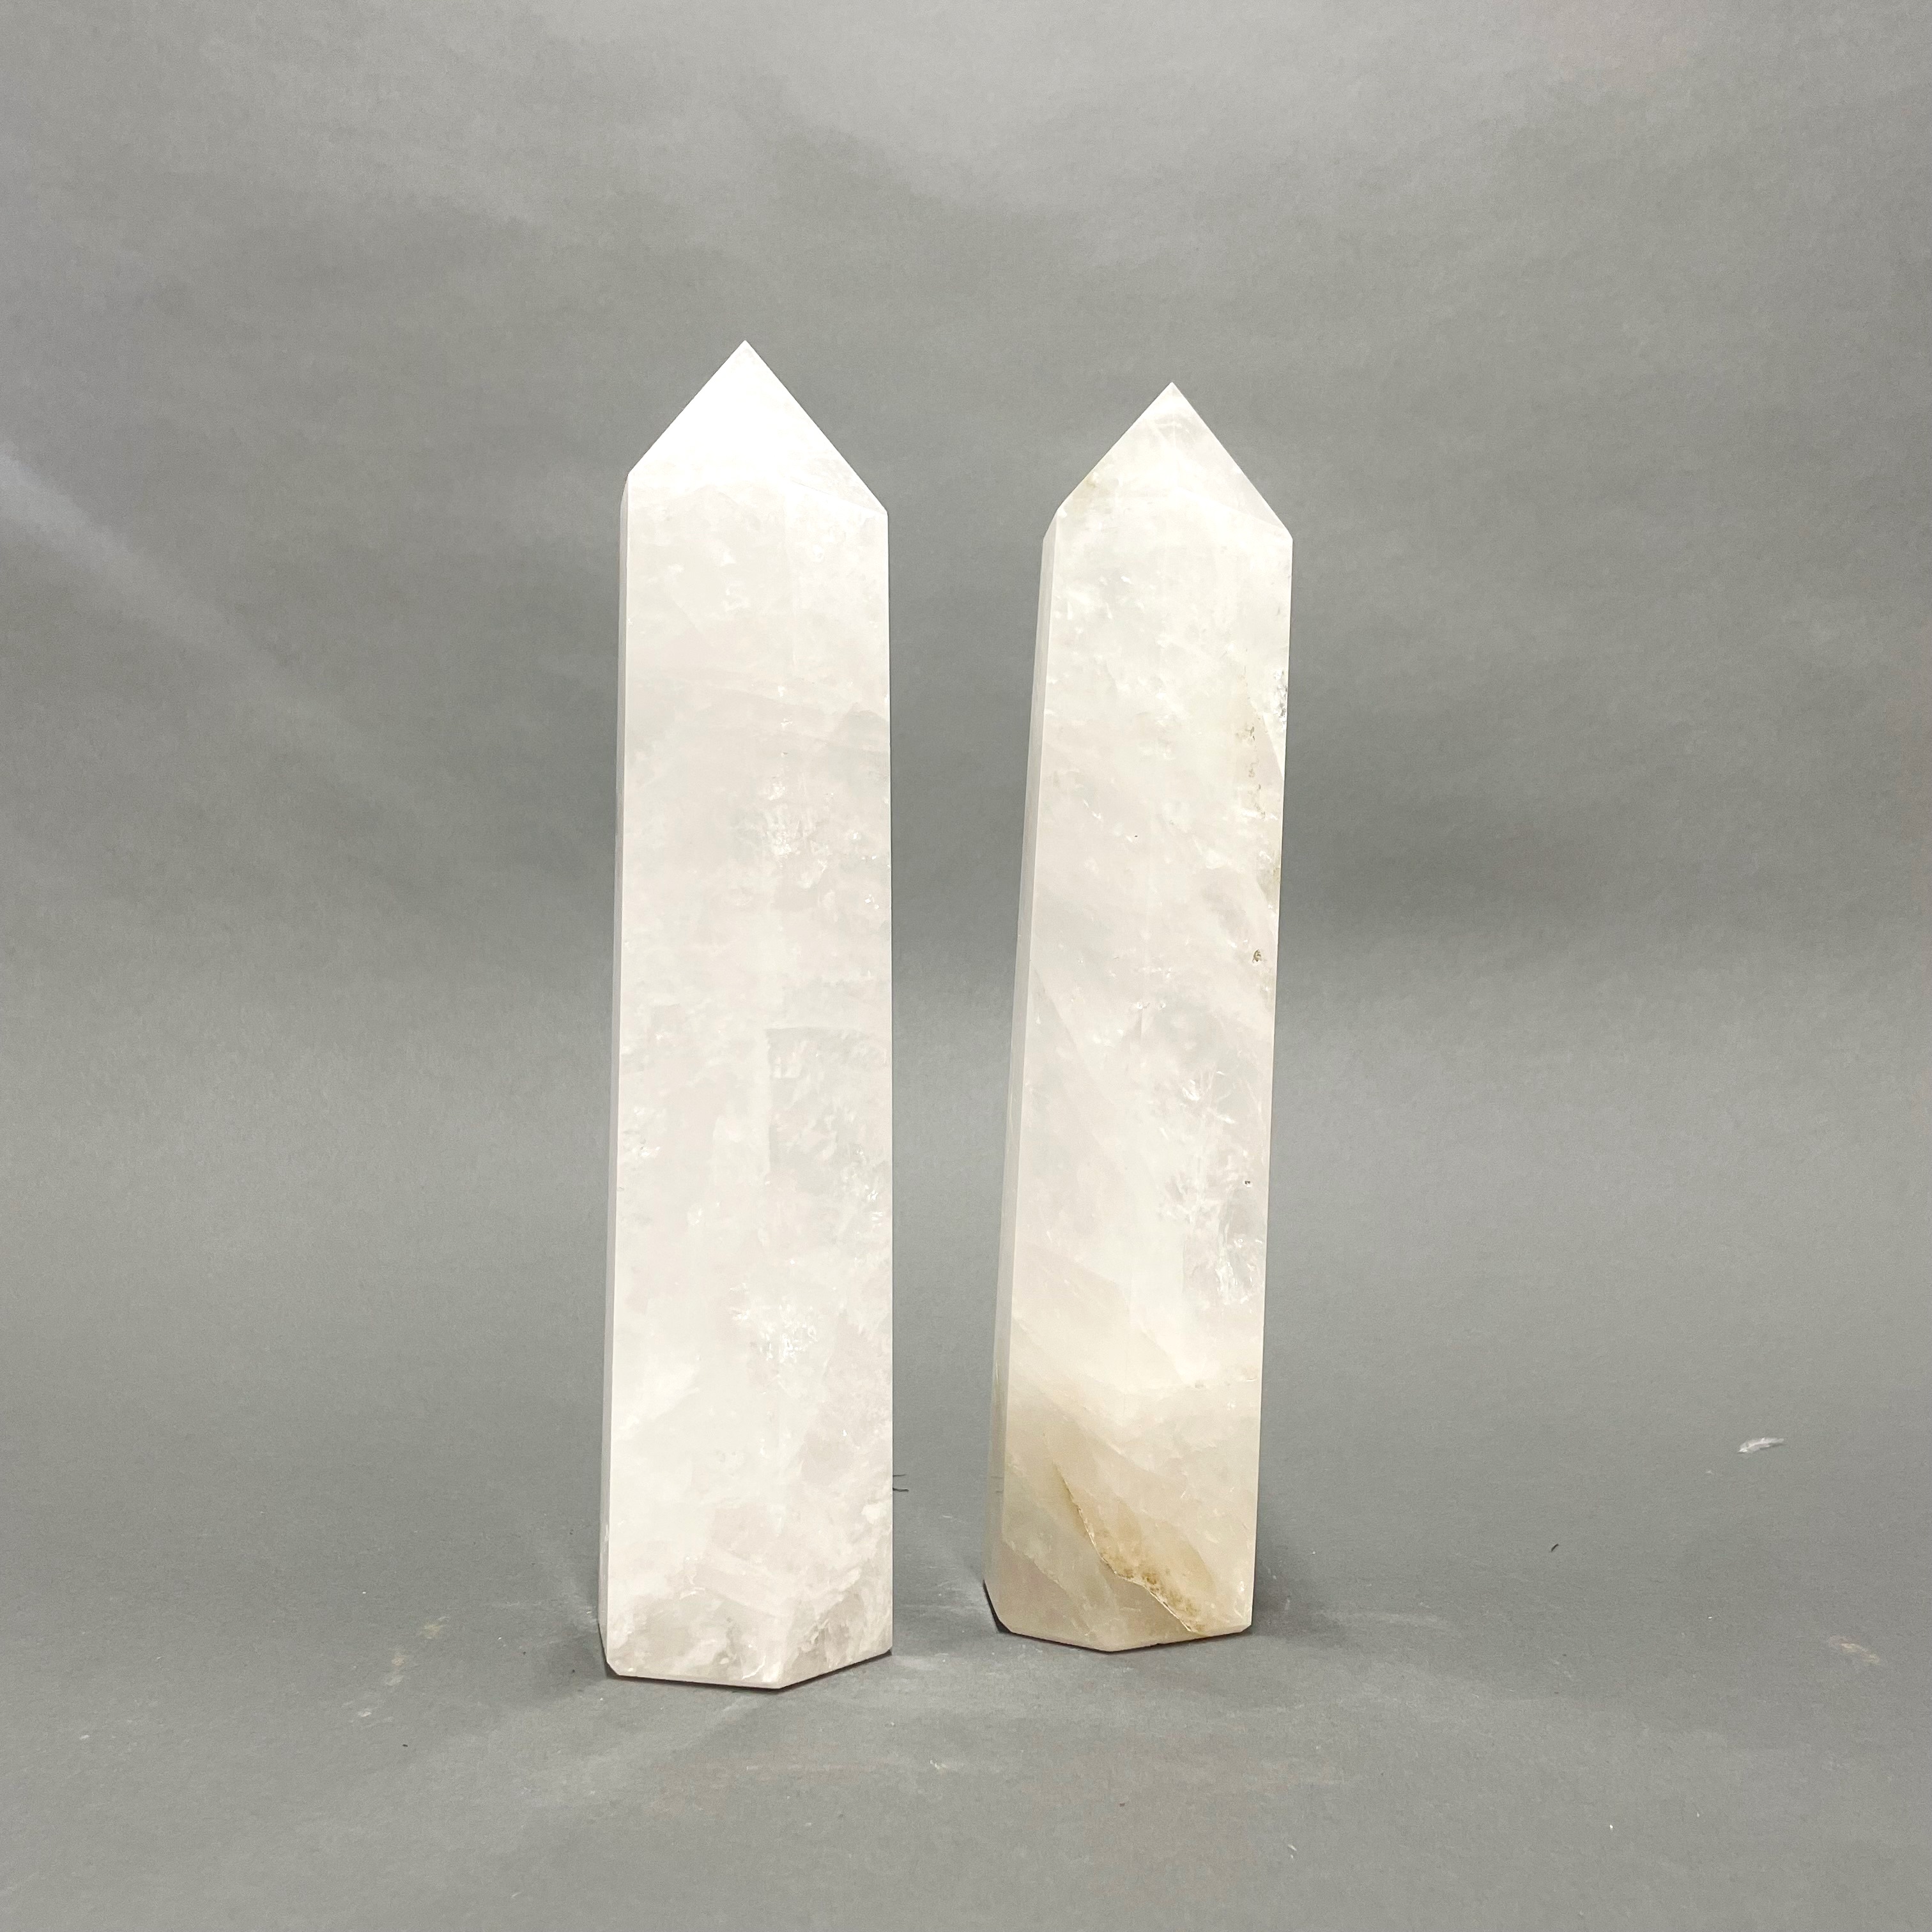 A pair of polished quartz crystal obelisk pillars, H. 29cm. - Image 2 of 3